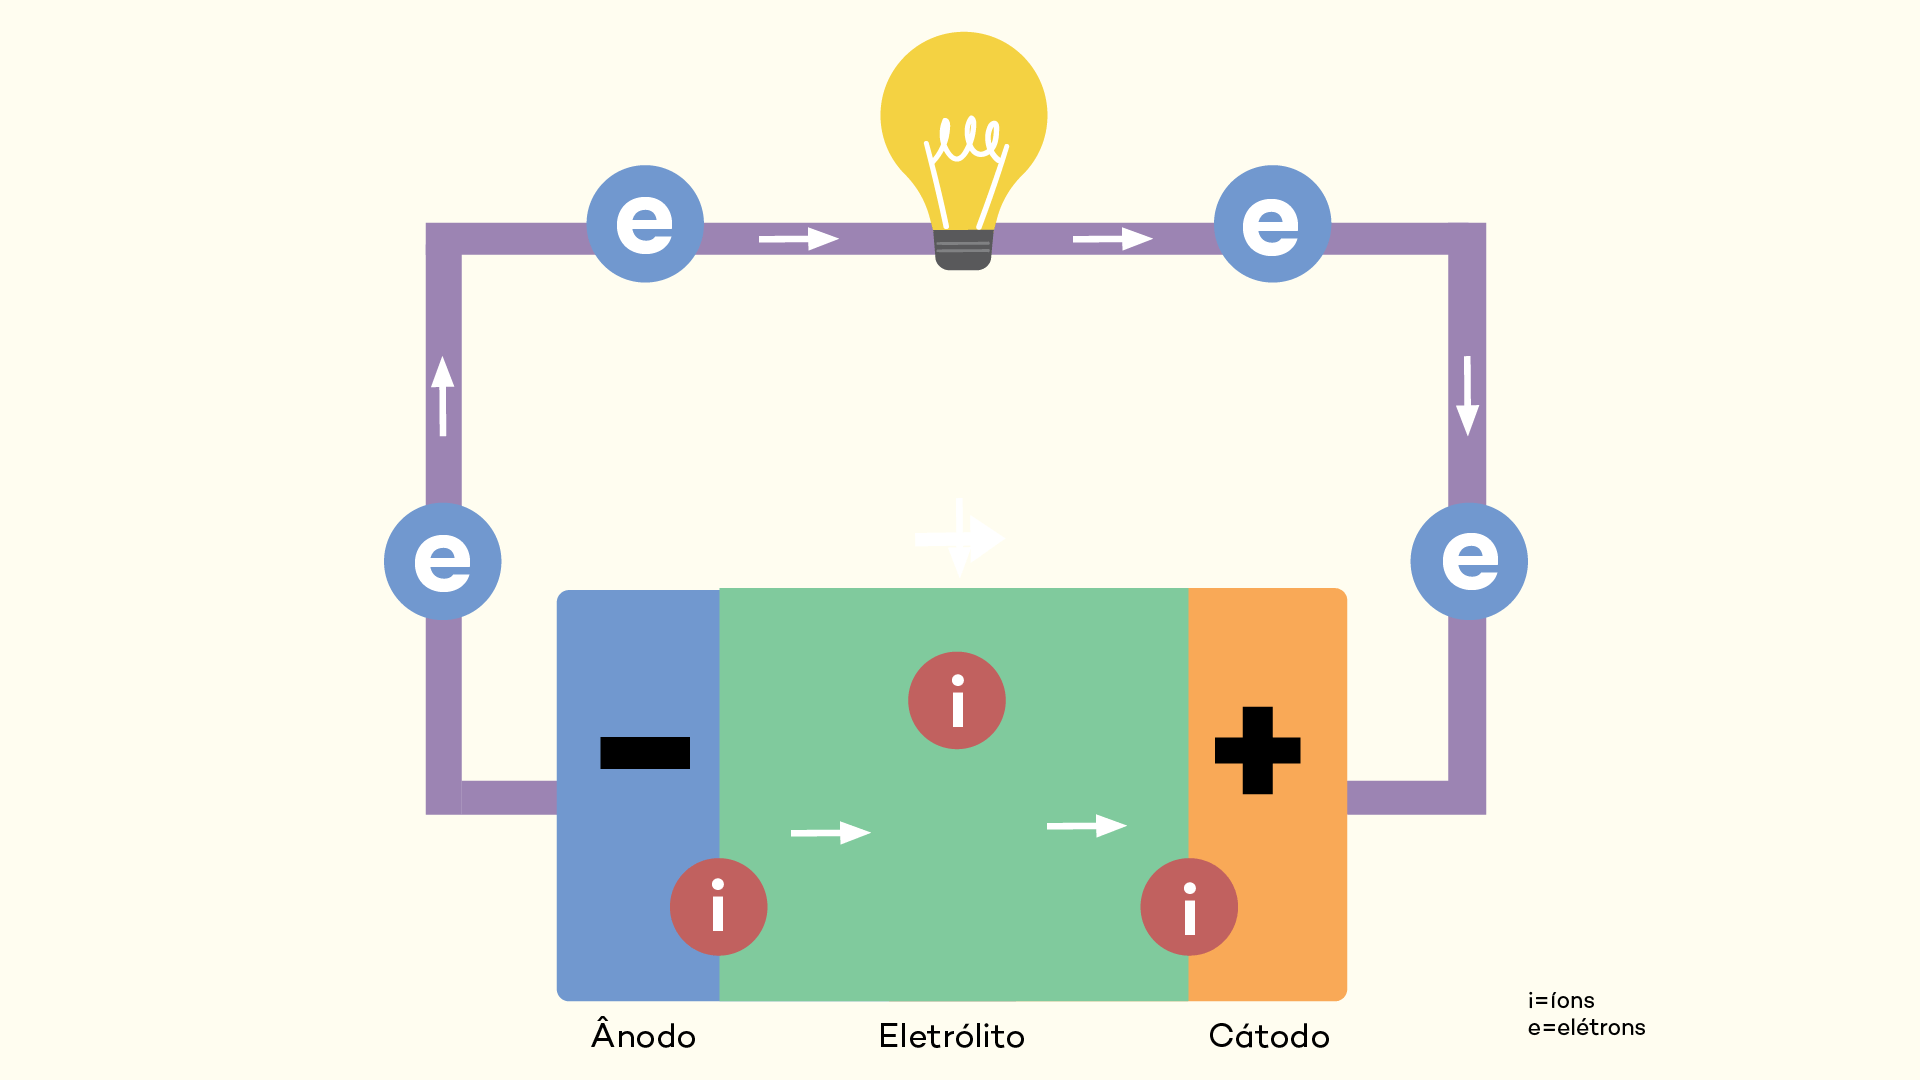 Ilustração explicativa sobre o funcionamento de uma bateria comum 